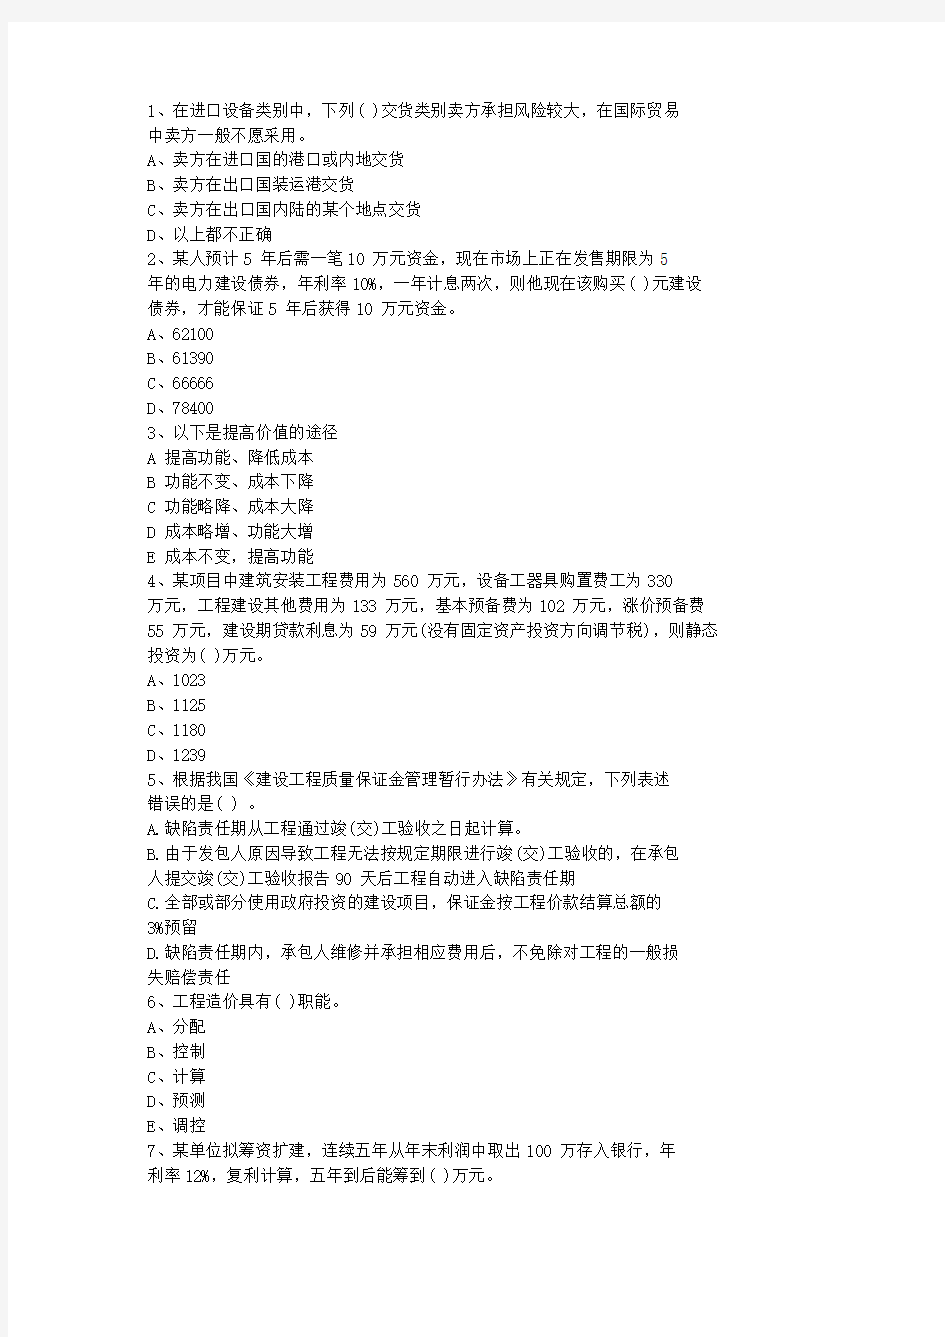 2013浙江省造价员考试试题(基础部分测试)最新考试试题库(完整版)